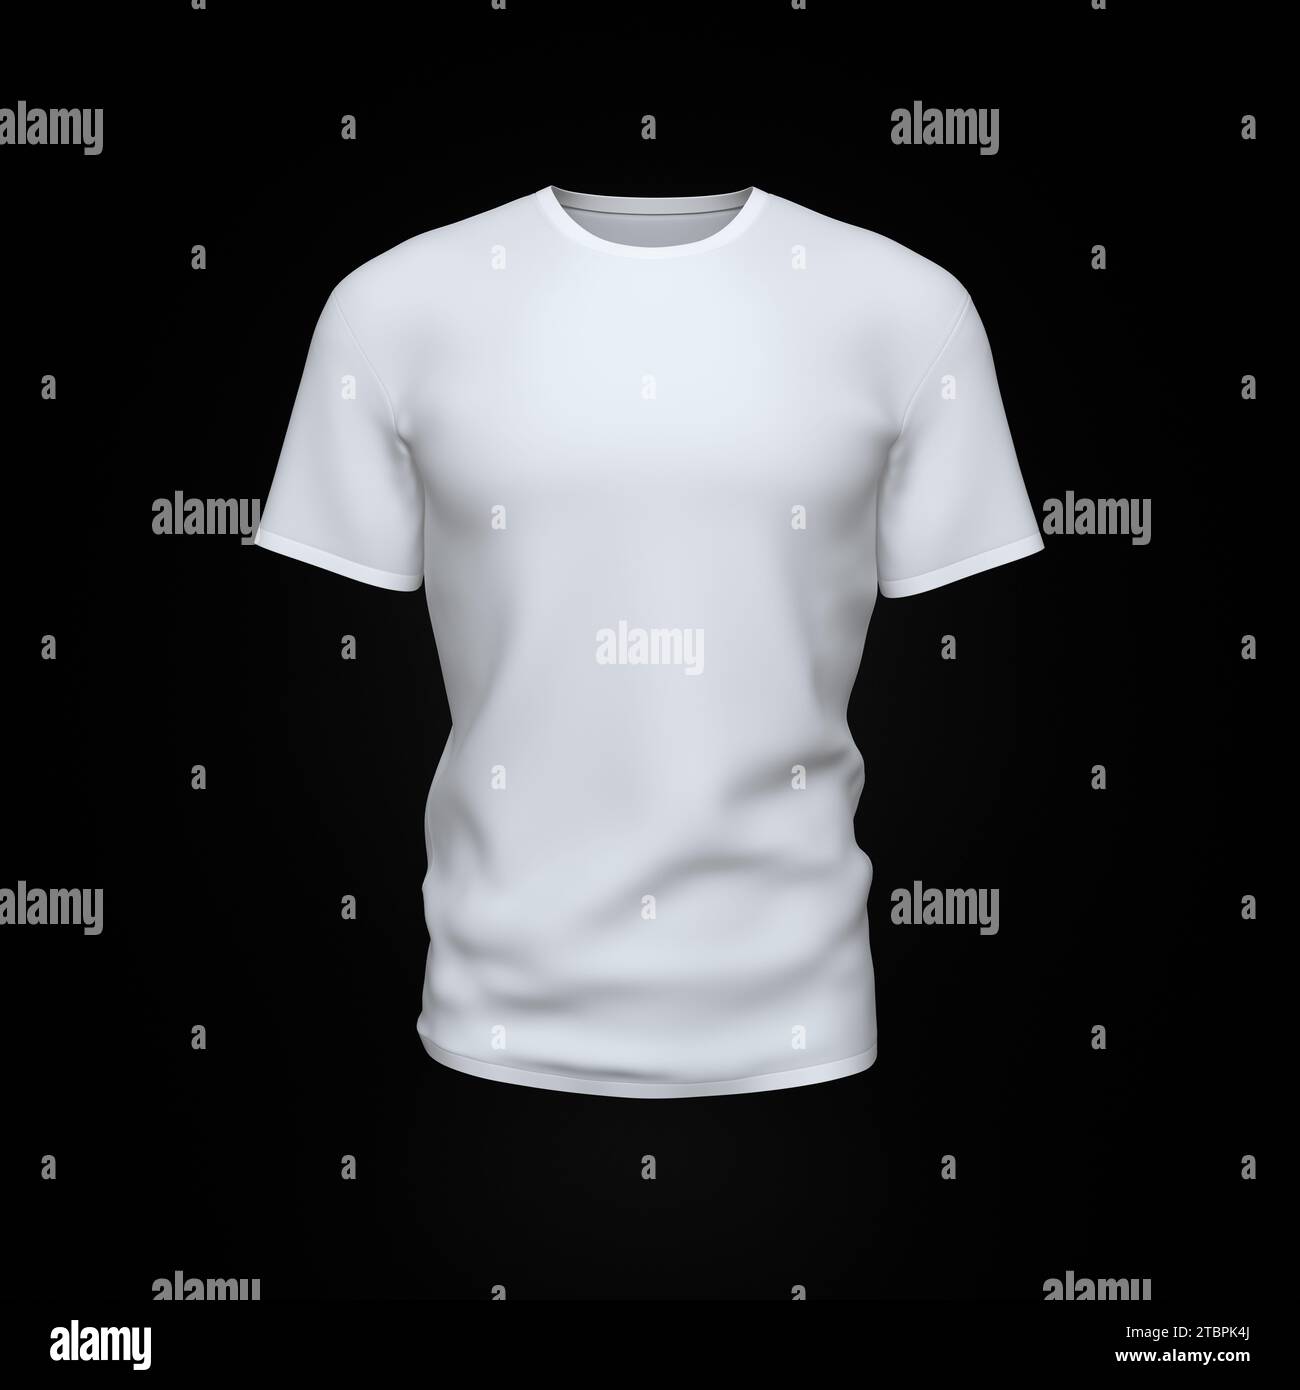 T-shirt bianca da uomo isolata su sfondo nero. Layout creativo. Mockup e spazio per Text and Logo Company. Concetto aziendale. Rappresentazione 3D. Foto Stock